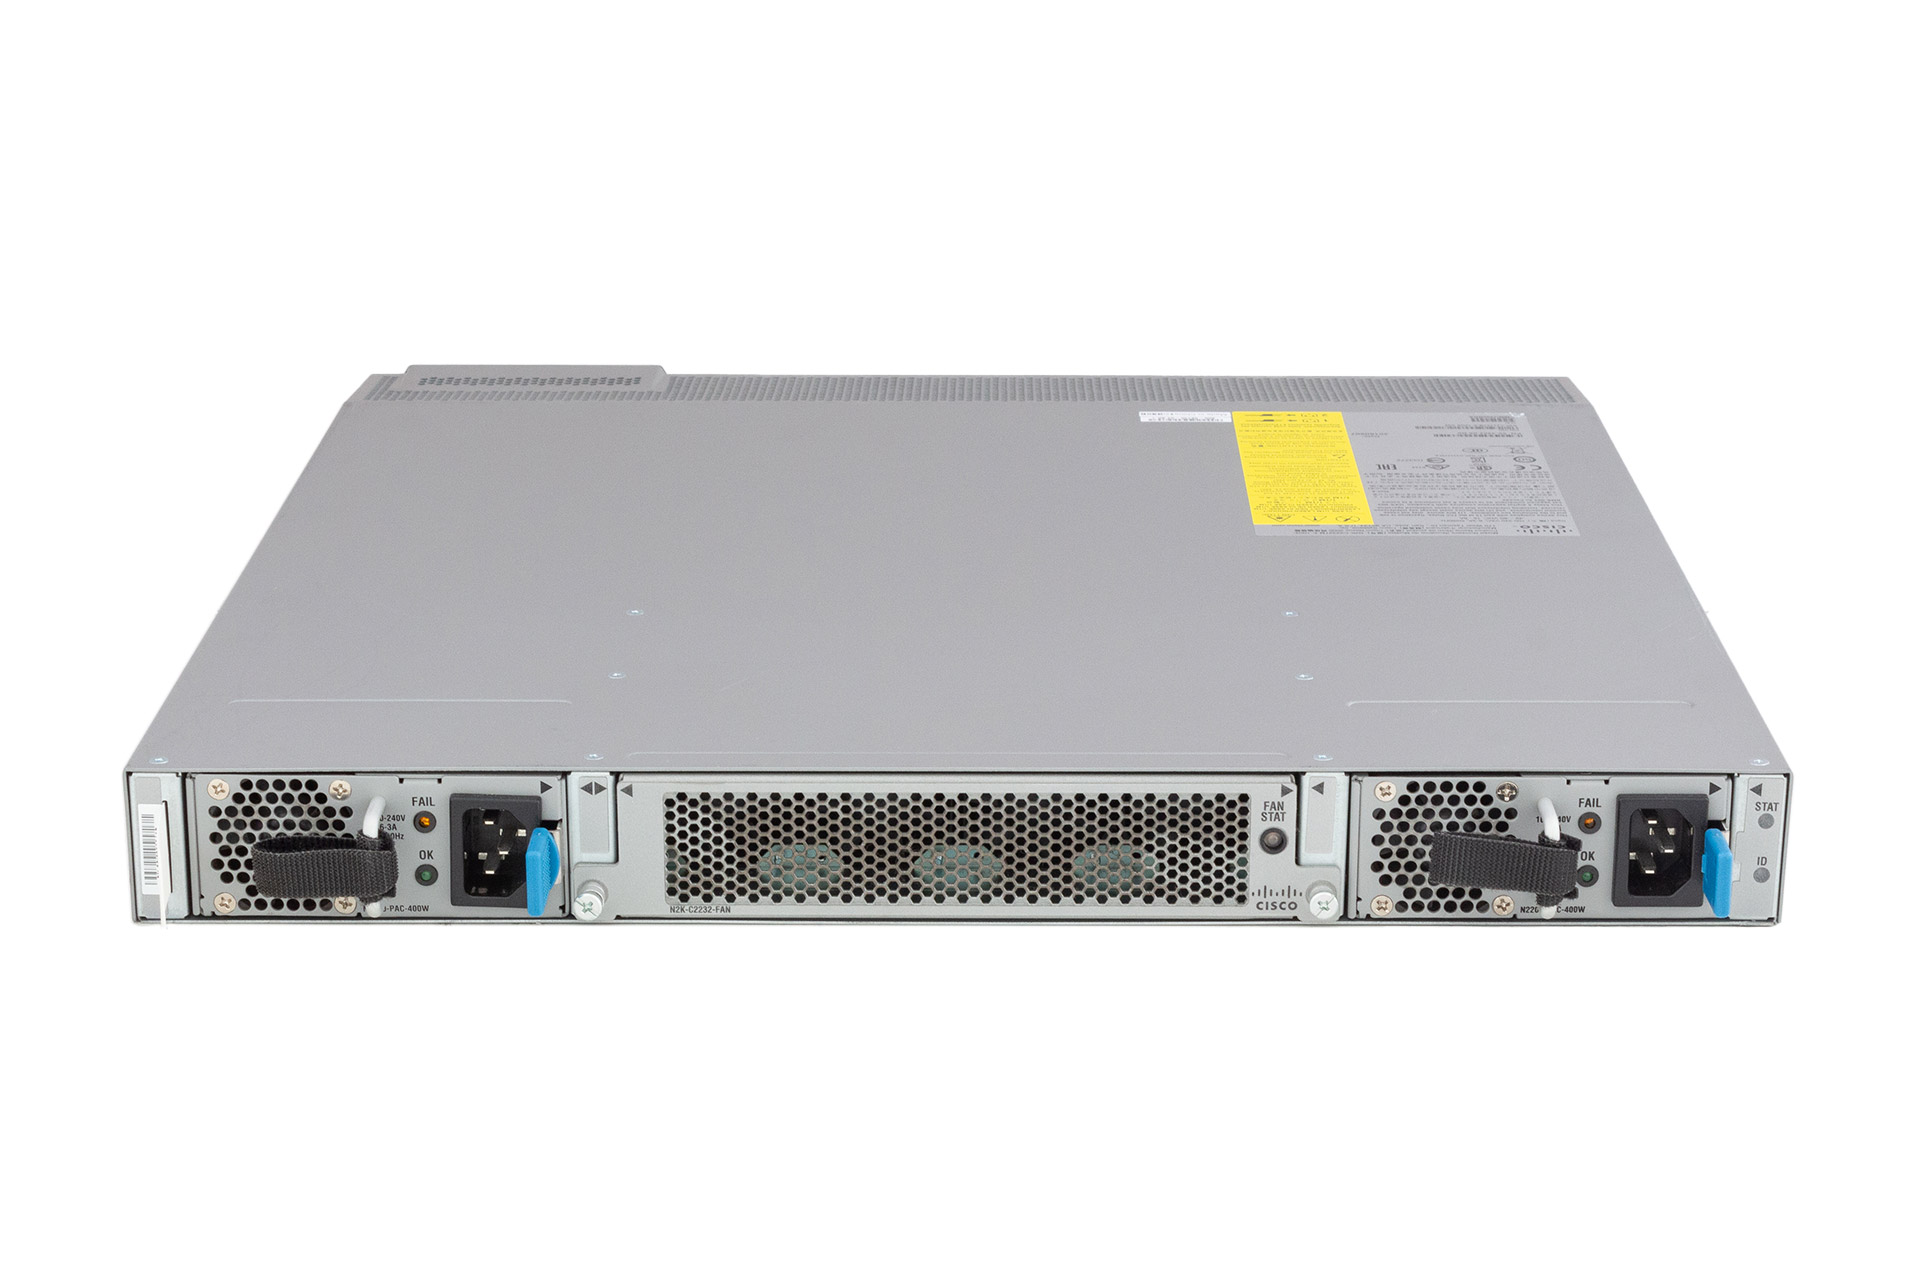 Cisco Switch Nexus 2232TM-E Fabric Extender, 32x10GbE RJ45, 8x10GbE SFP+, Fan, 2x400W, Port-Side-Out